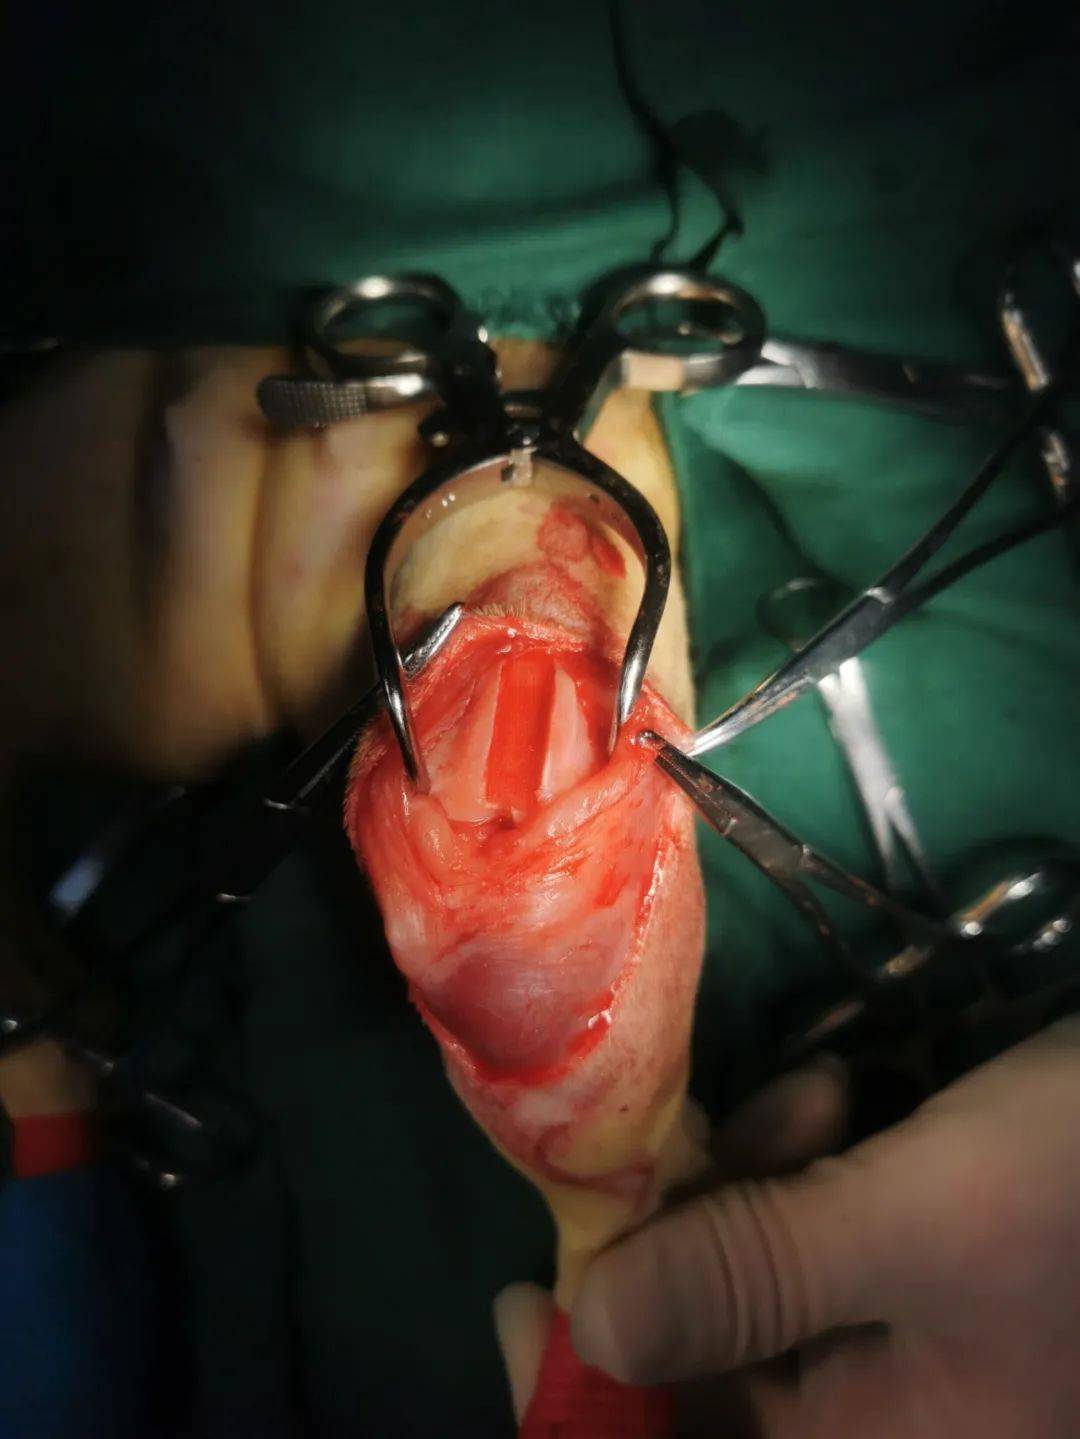 犬髌骨脱位手术过程图片